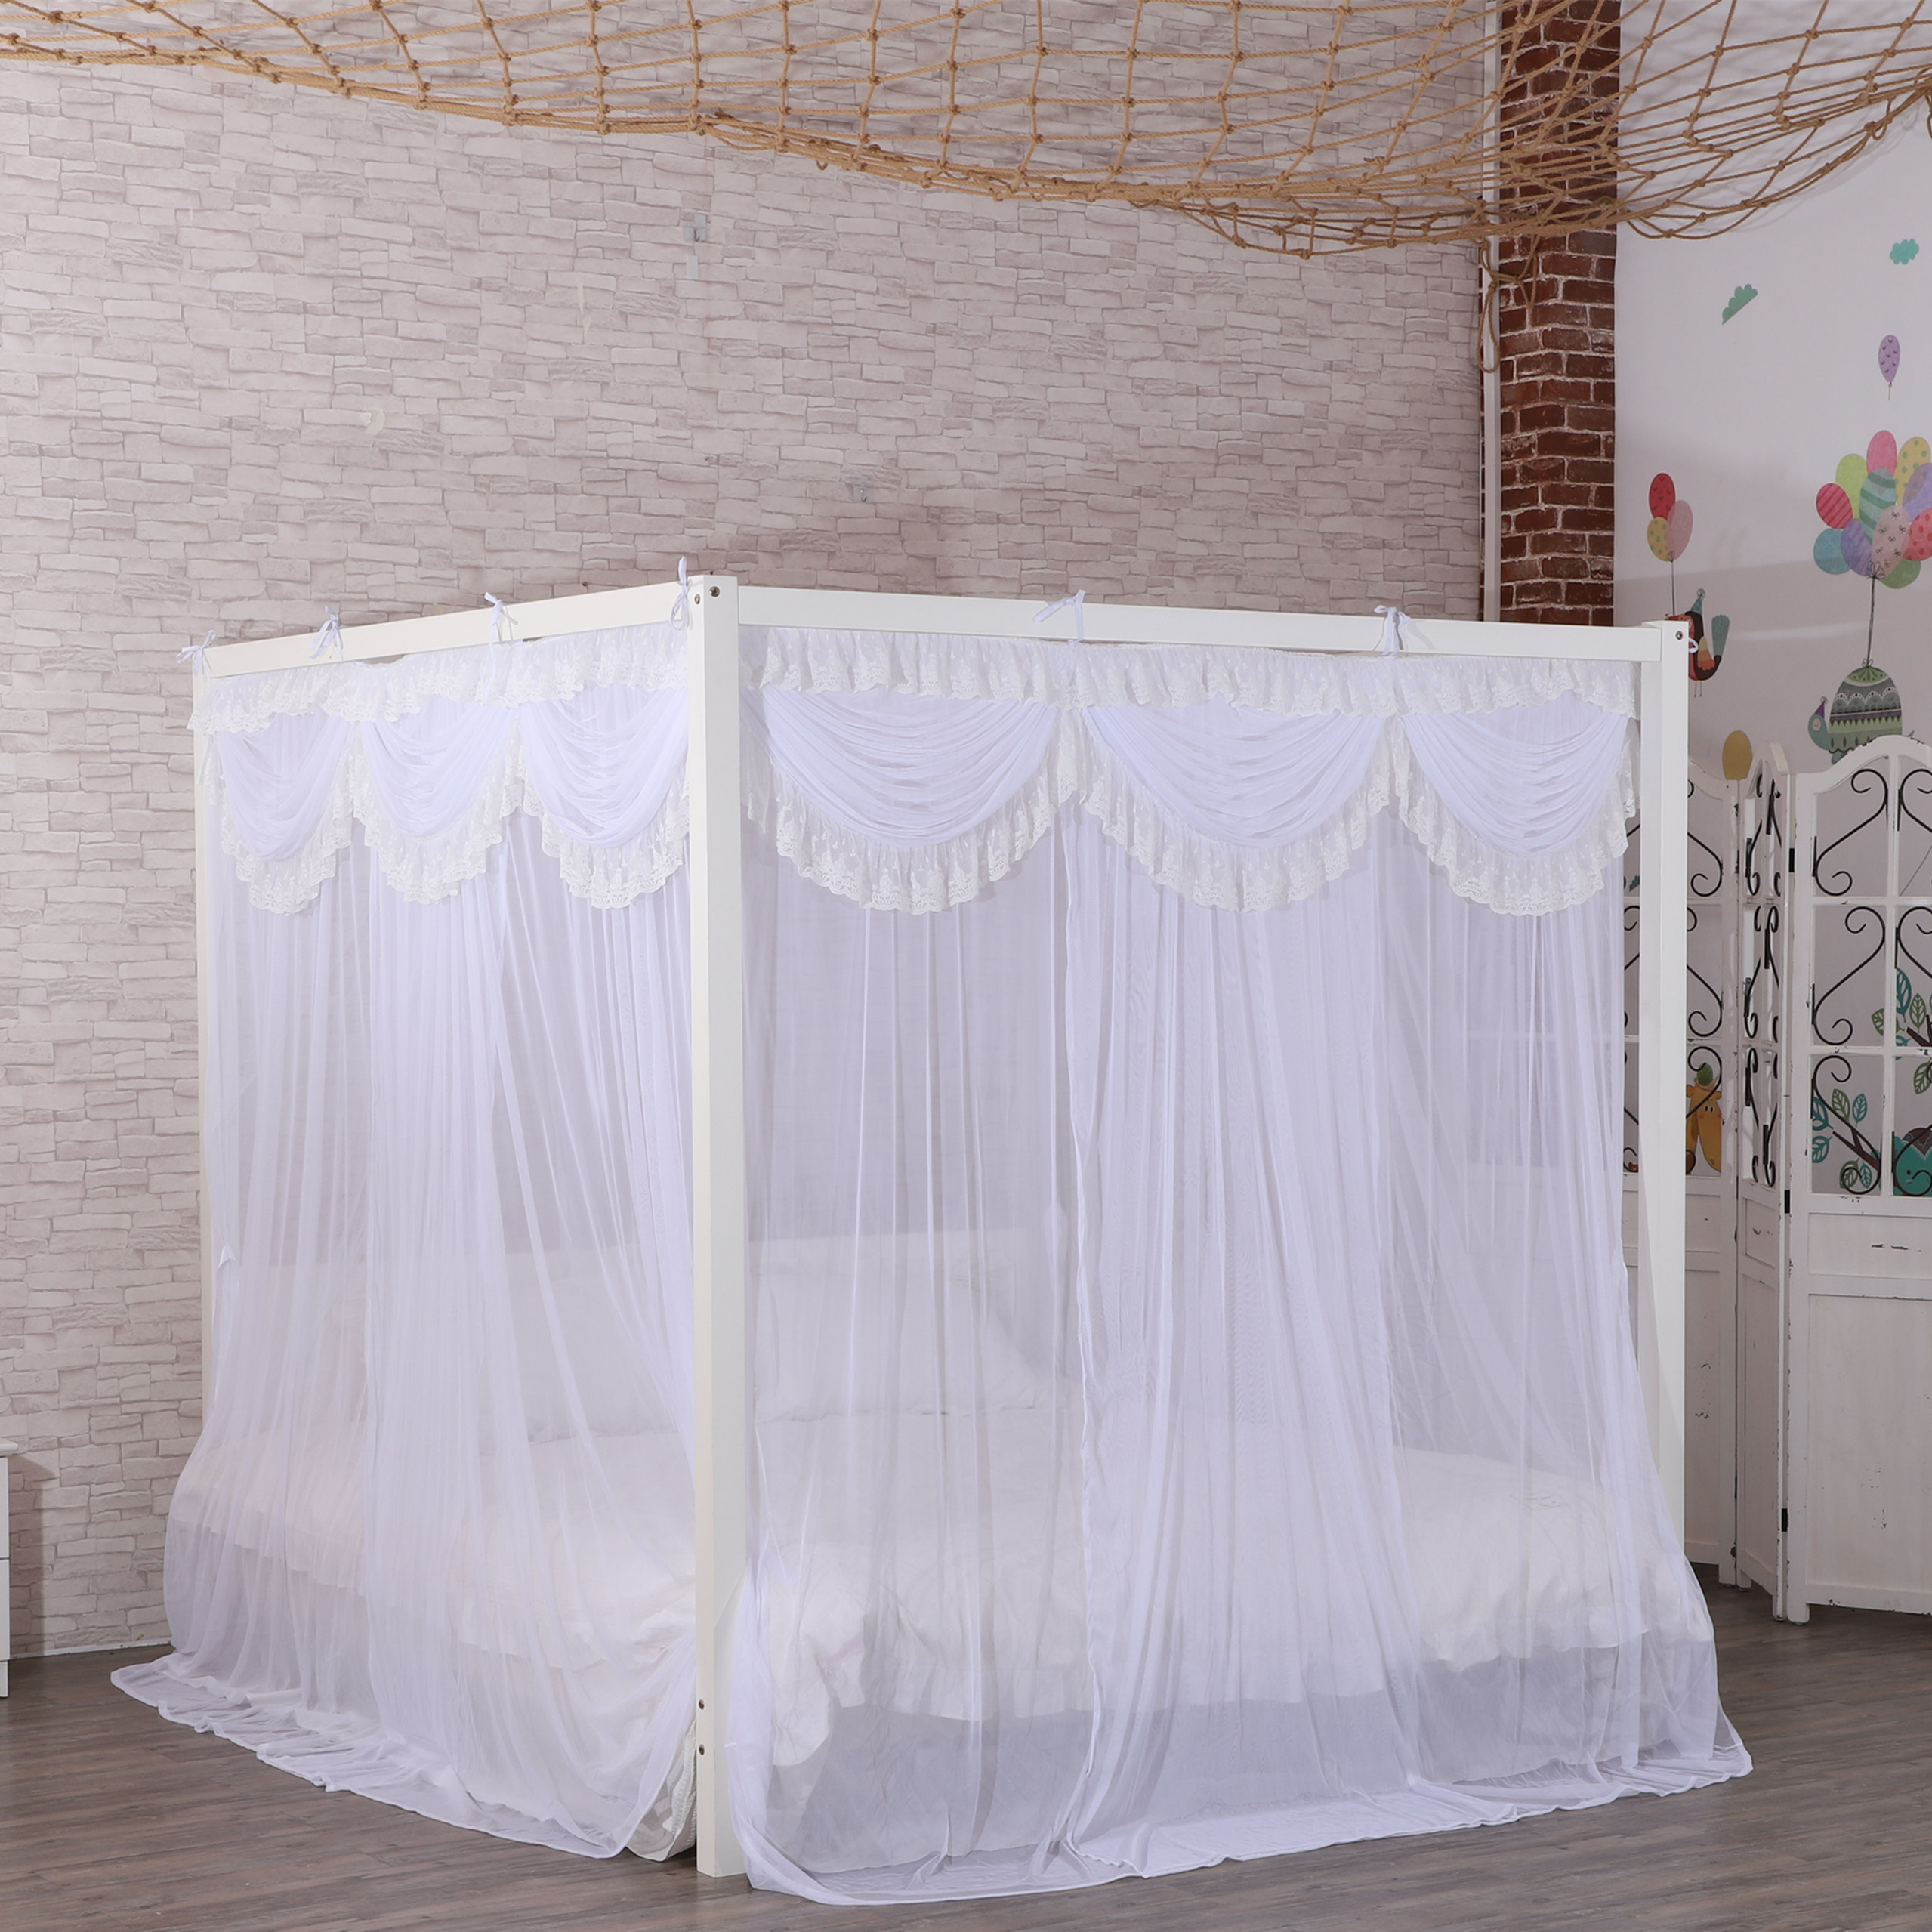 Nuevo diseño estilo princesa hermoso dosel de encaje malla interior decoración del hogar Red King Queen tamaño cama forma cuadrada mosquitera